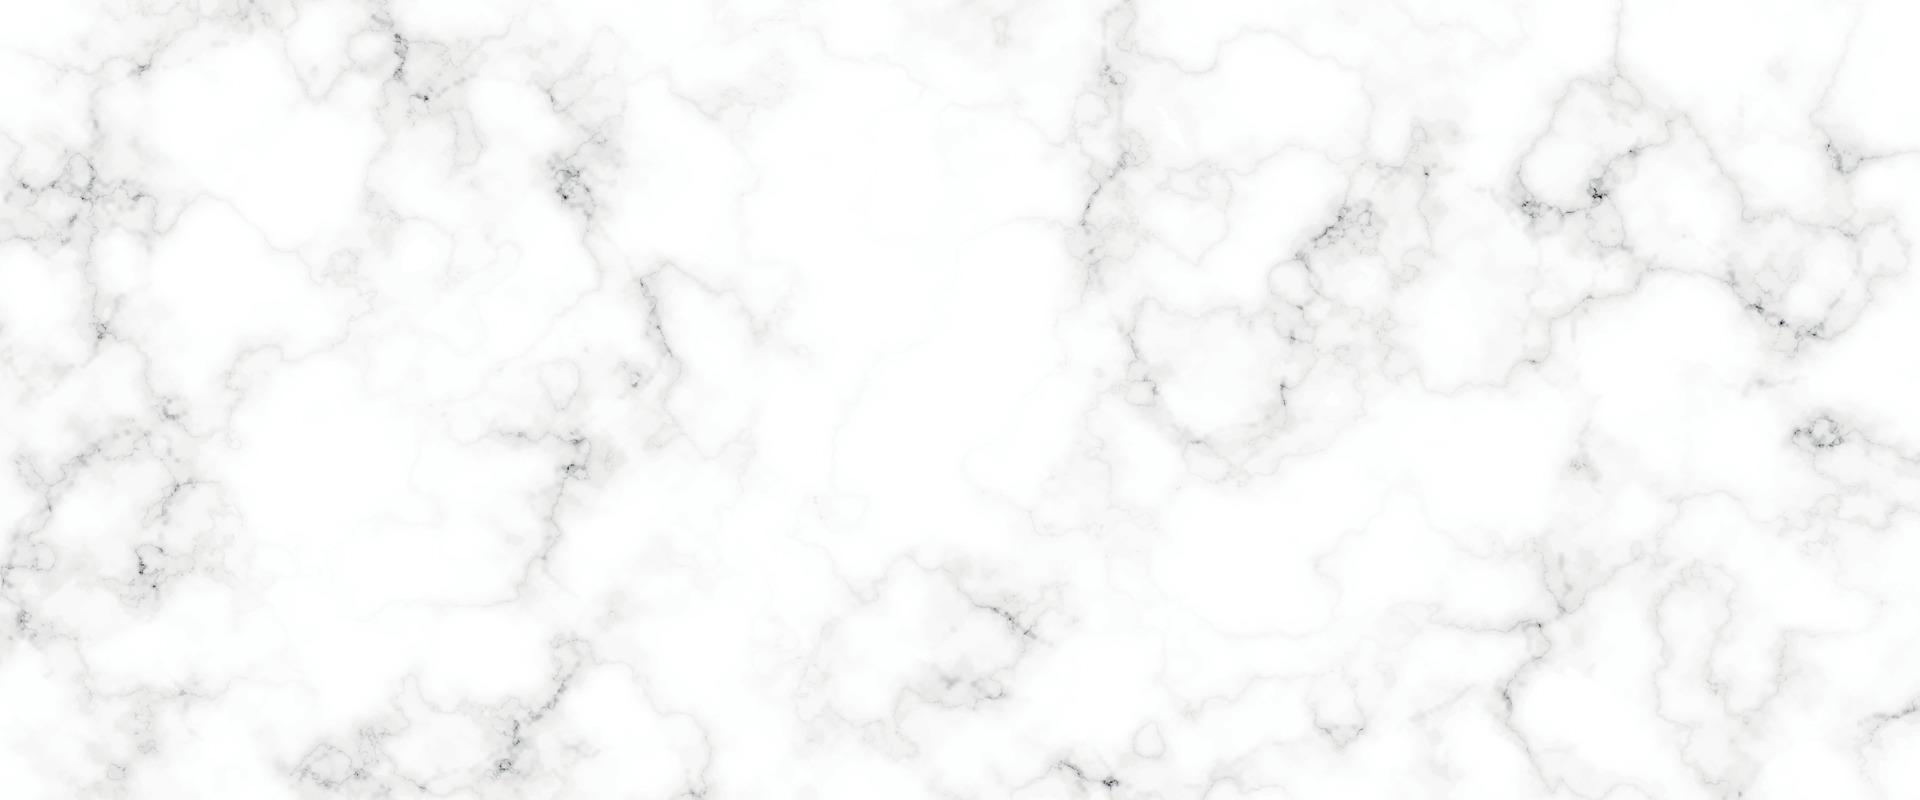 textura de fundo de mármore branco padrão de pedra natural. preto claro e elegante abstrato para piso de cerâmica, contra-textura, laje de pedra, azulejo liso, prata, textura de mármore para telha de pele, design luxuoso vetor